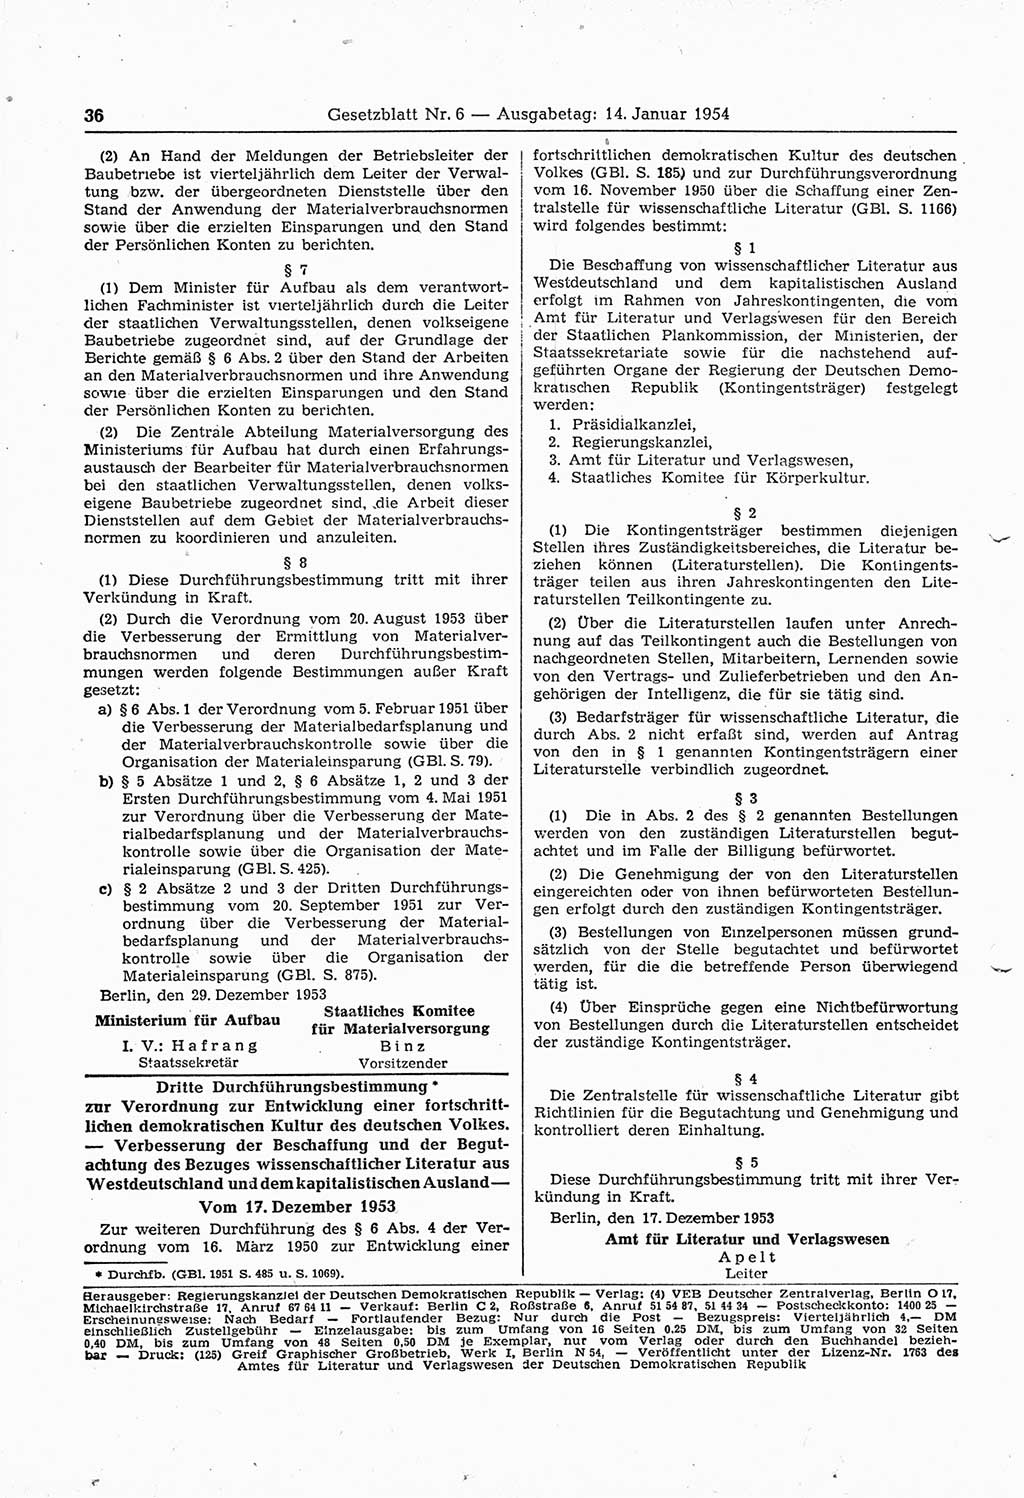 Gesetzblatt (GBl.) der Deutschen Demokratischen Republik (DDR) 1954, Seite 36 (GBl. DDR 1954, S. 36)